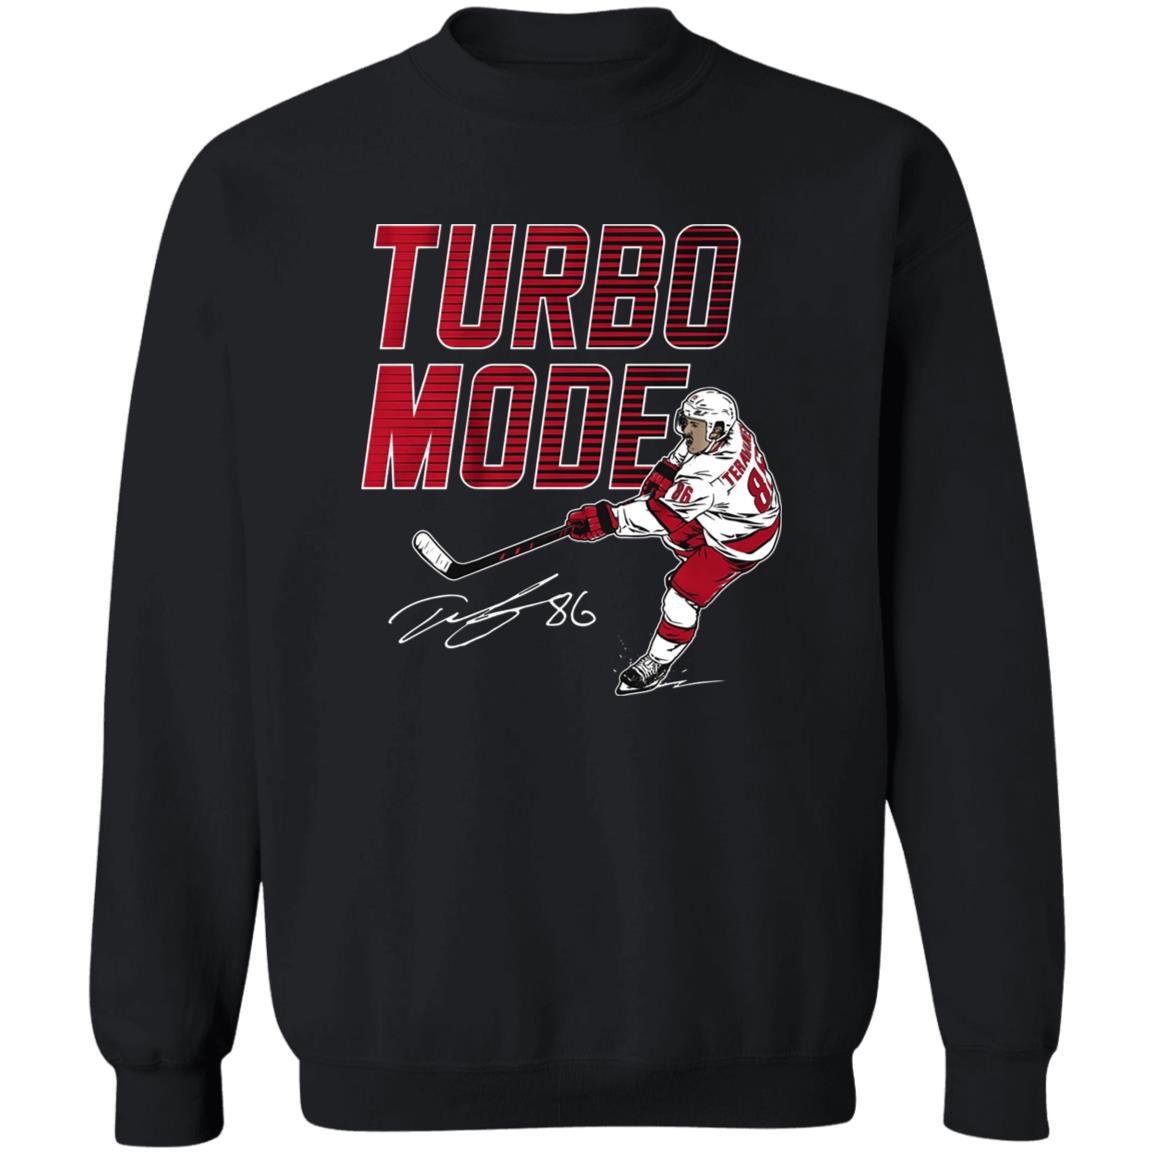 Turbo mode Teuvo Teräväinen Carolina Hurricanes signature shirt